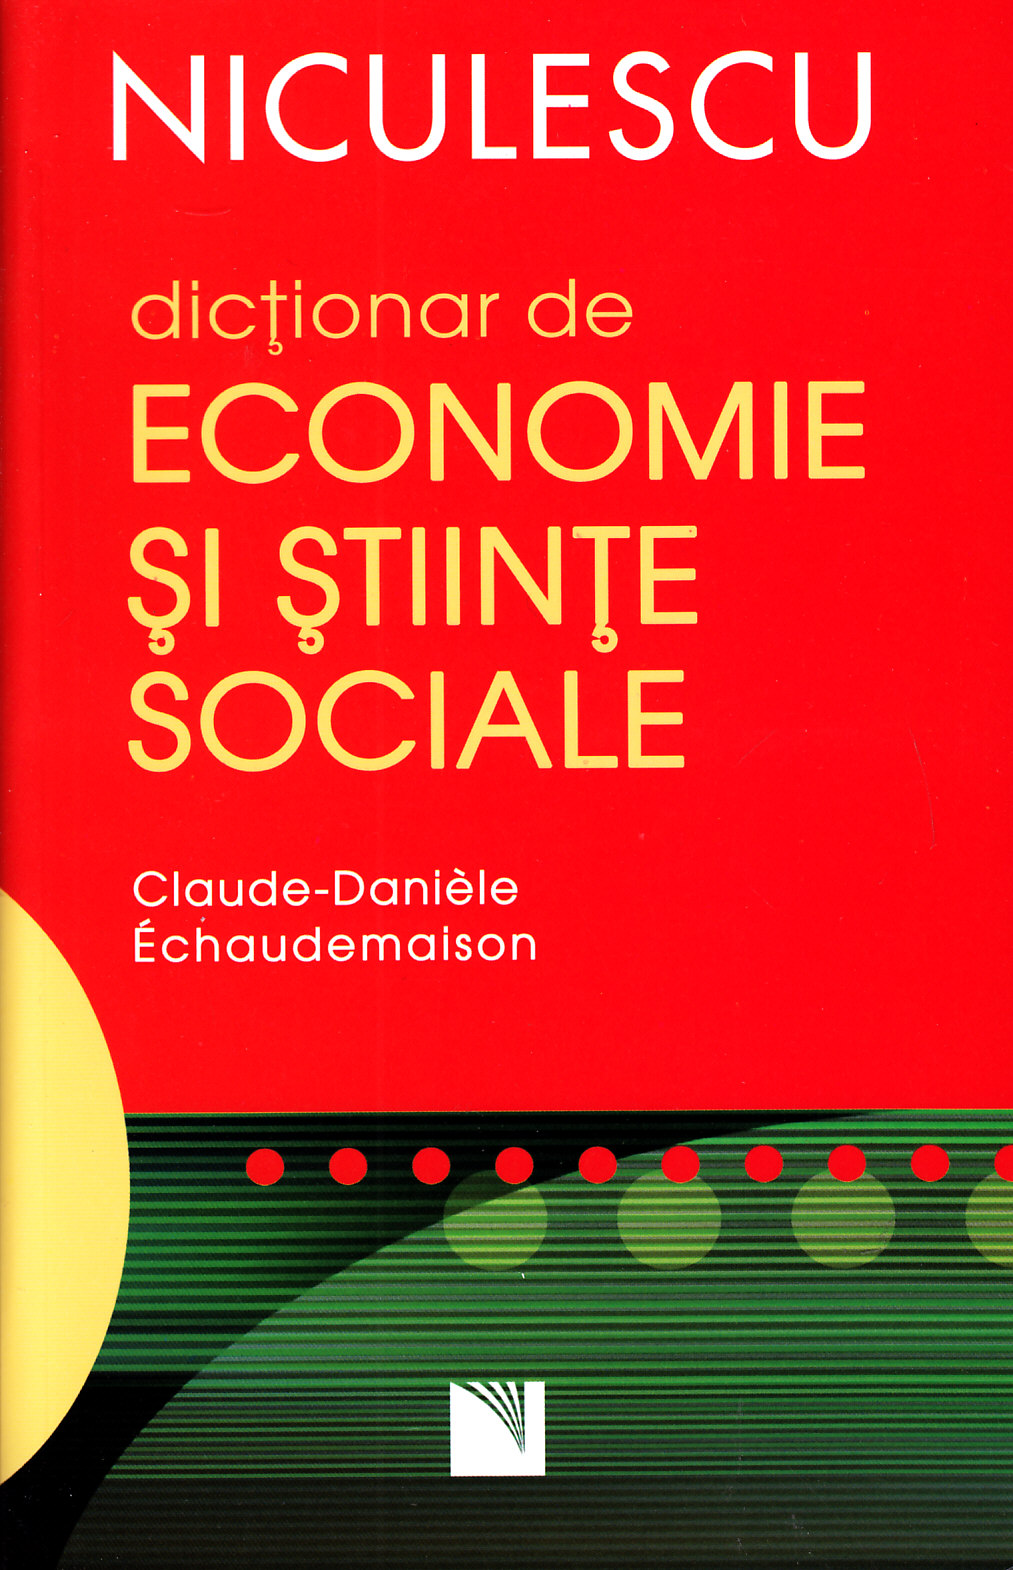 Dictionar de economie si stiinte sociale - Claude-Daniele Echaudemaison